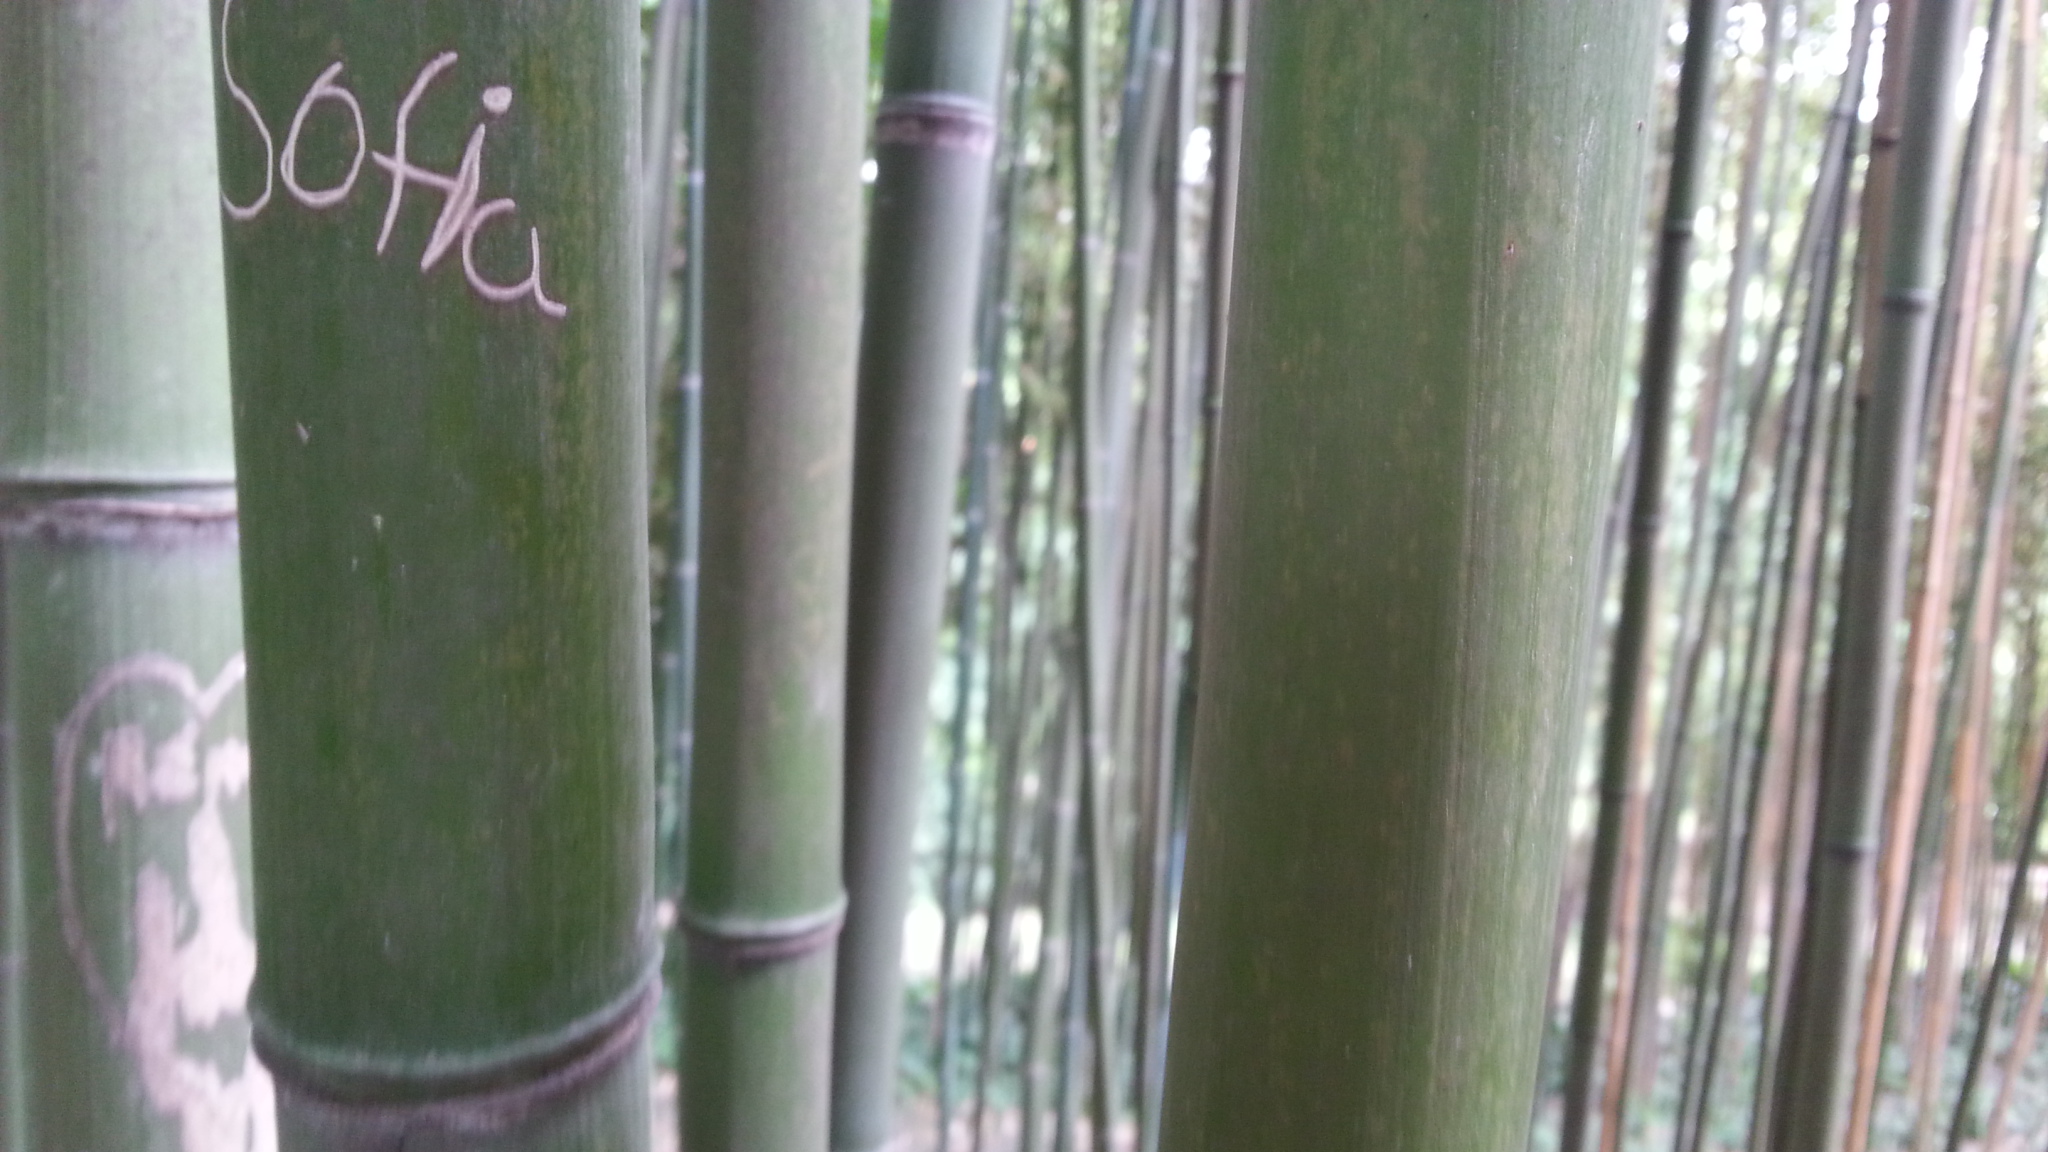 Sofia incisa sul Bambù dell'orto botanico di Roma